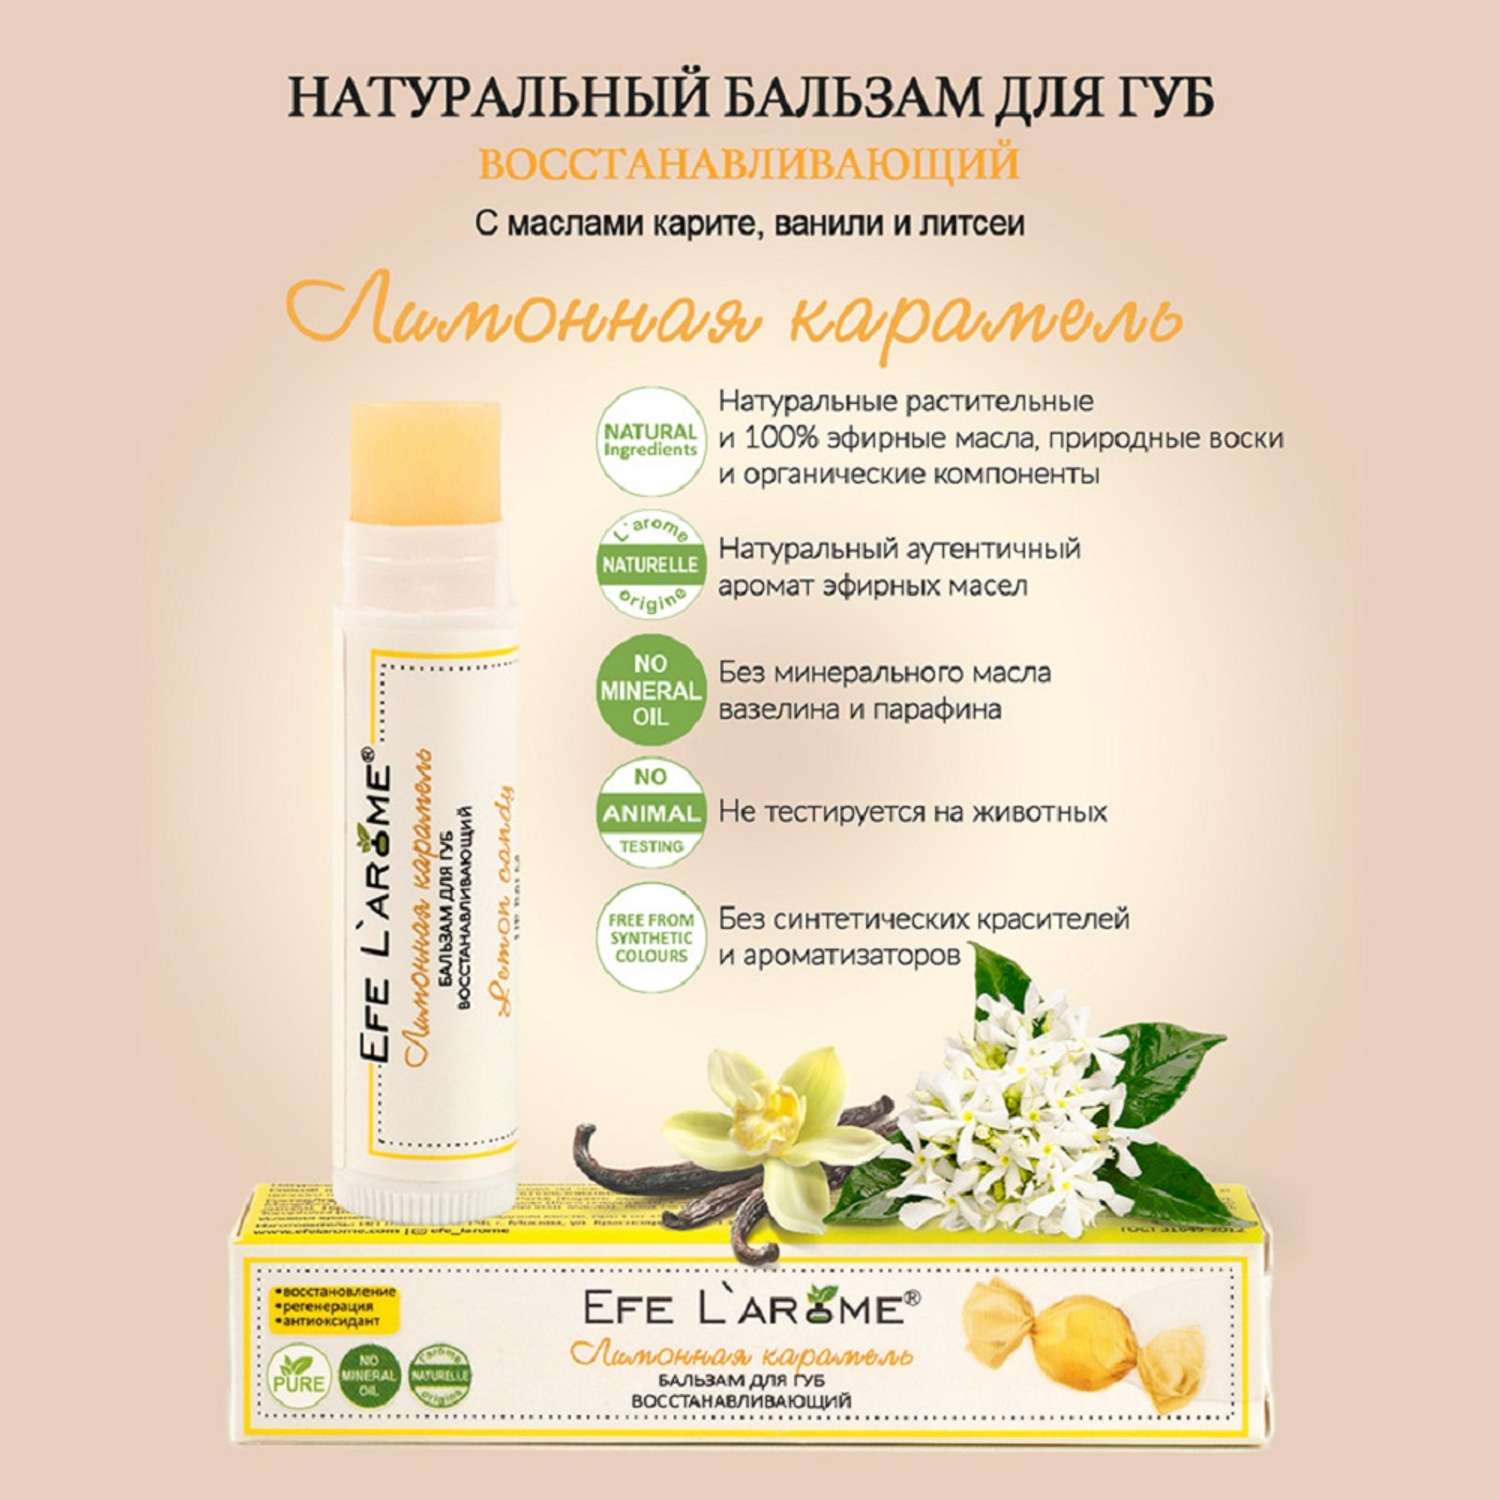 Бальзам для губ Efe L’arome Лимонная карамель восстановление с эфирным маслом литсеи и ванили - фото 6